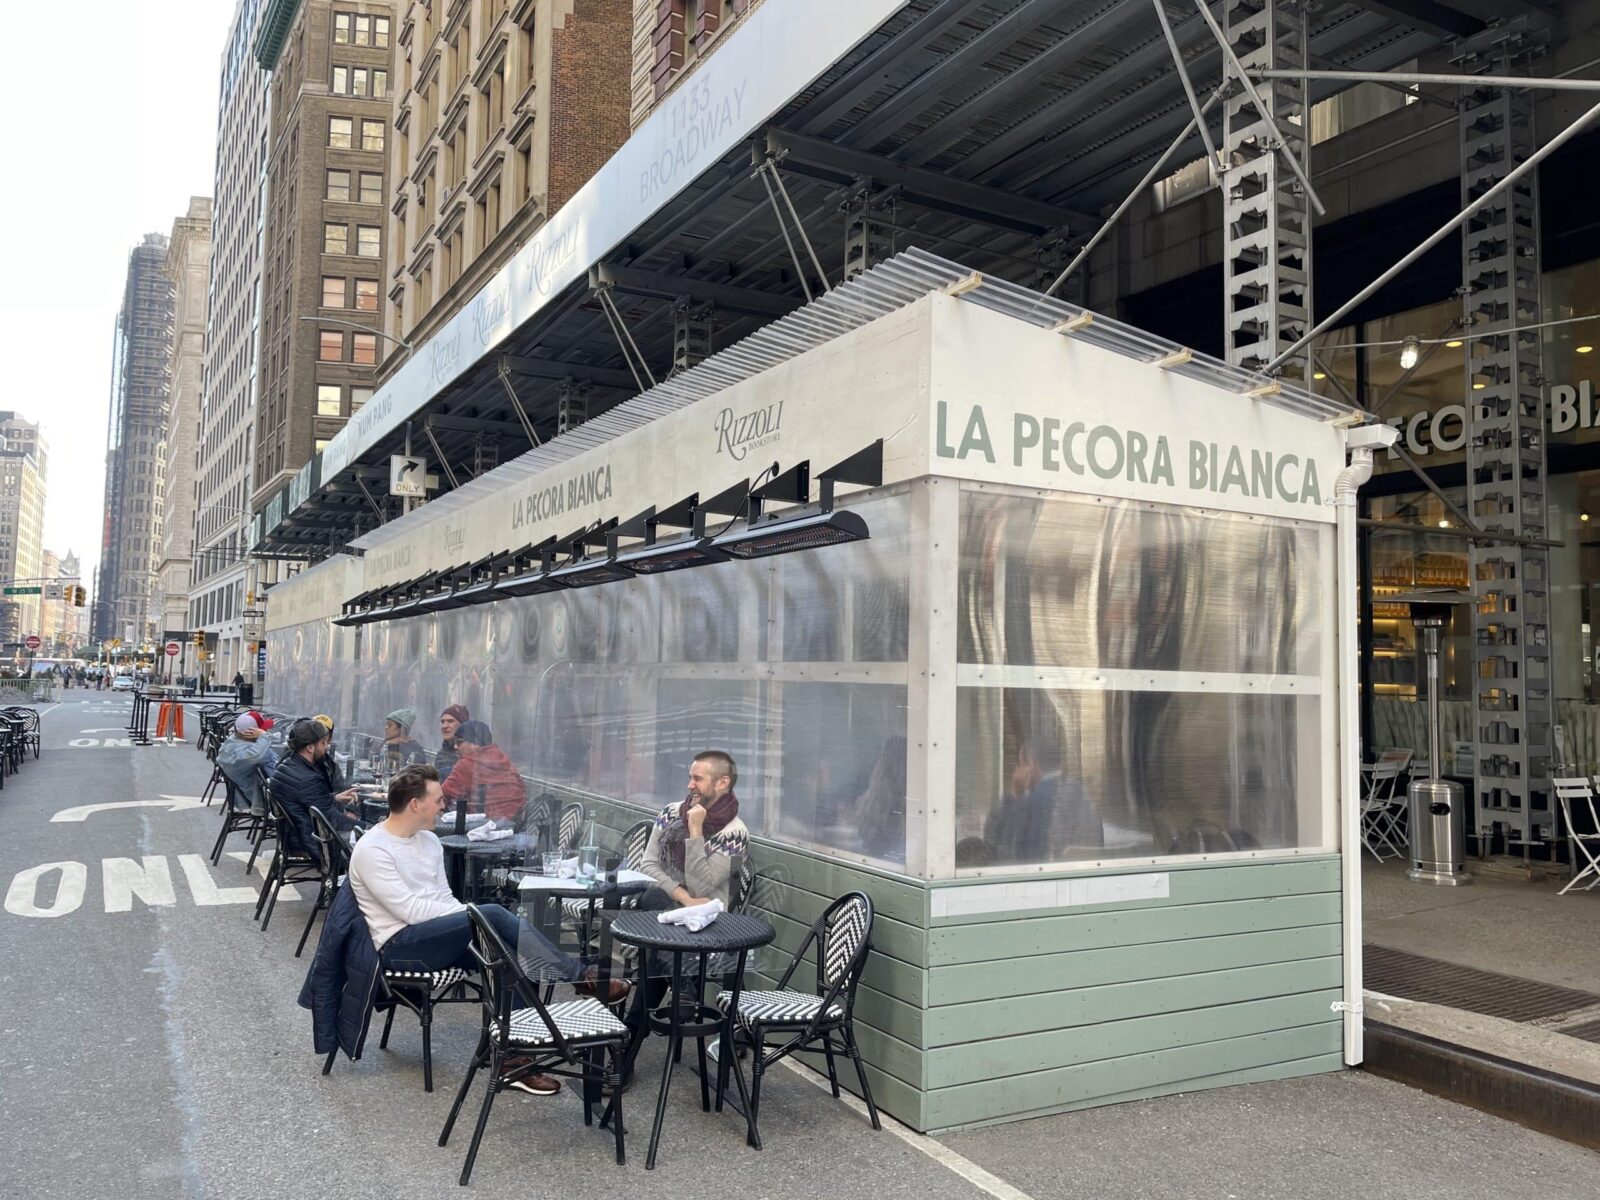 I posti a sedere del ristorante si estendono all'esterno sulla strada a New York con riscaldatori elettrici